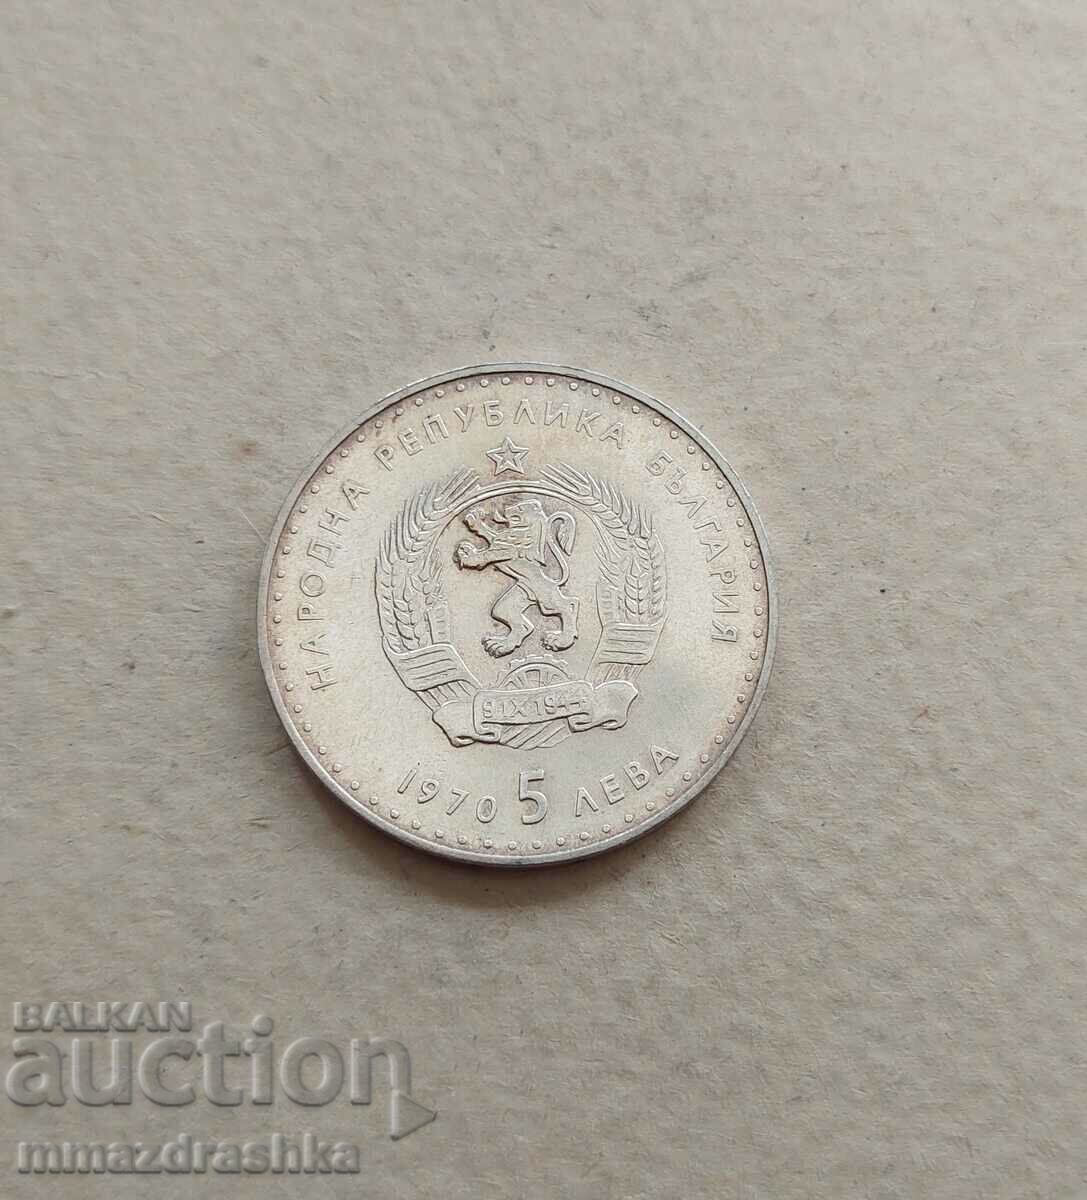 Argint 5 BGN 1970, VAZOV